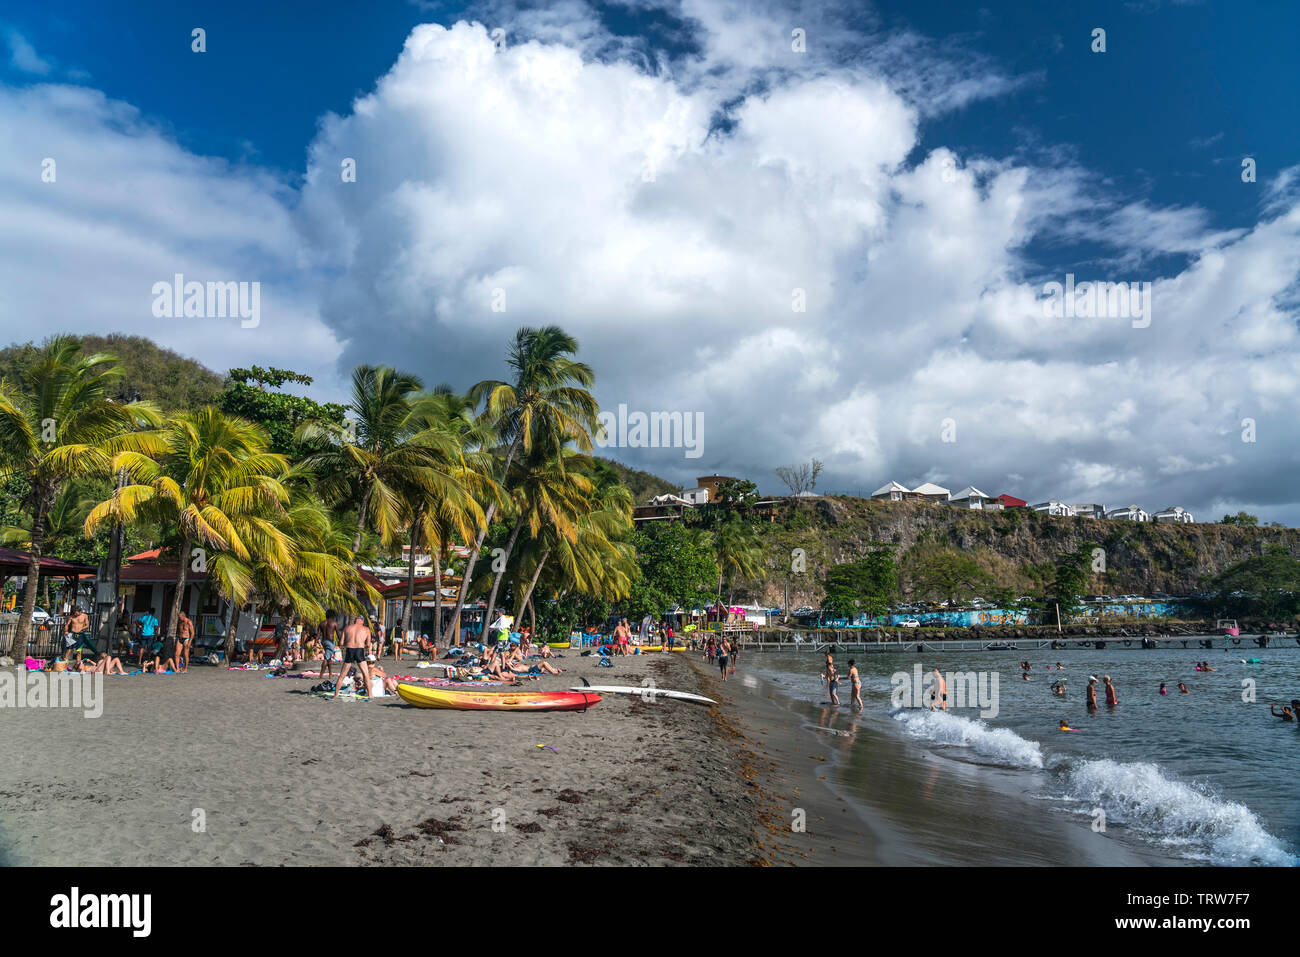 Der Strand Plage de Malendure, Ax-les-Thermes, Basse-Terre, Guadeloupe, Frankreich | Plage de Malendure Strand, Ax-les-Thermes, Basse-Terre, Guadeloupe, Fra Stockfoto